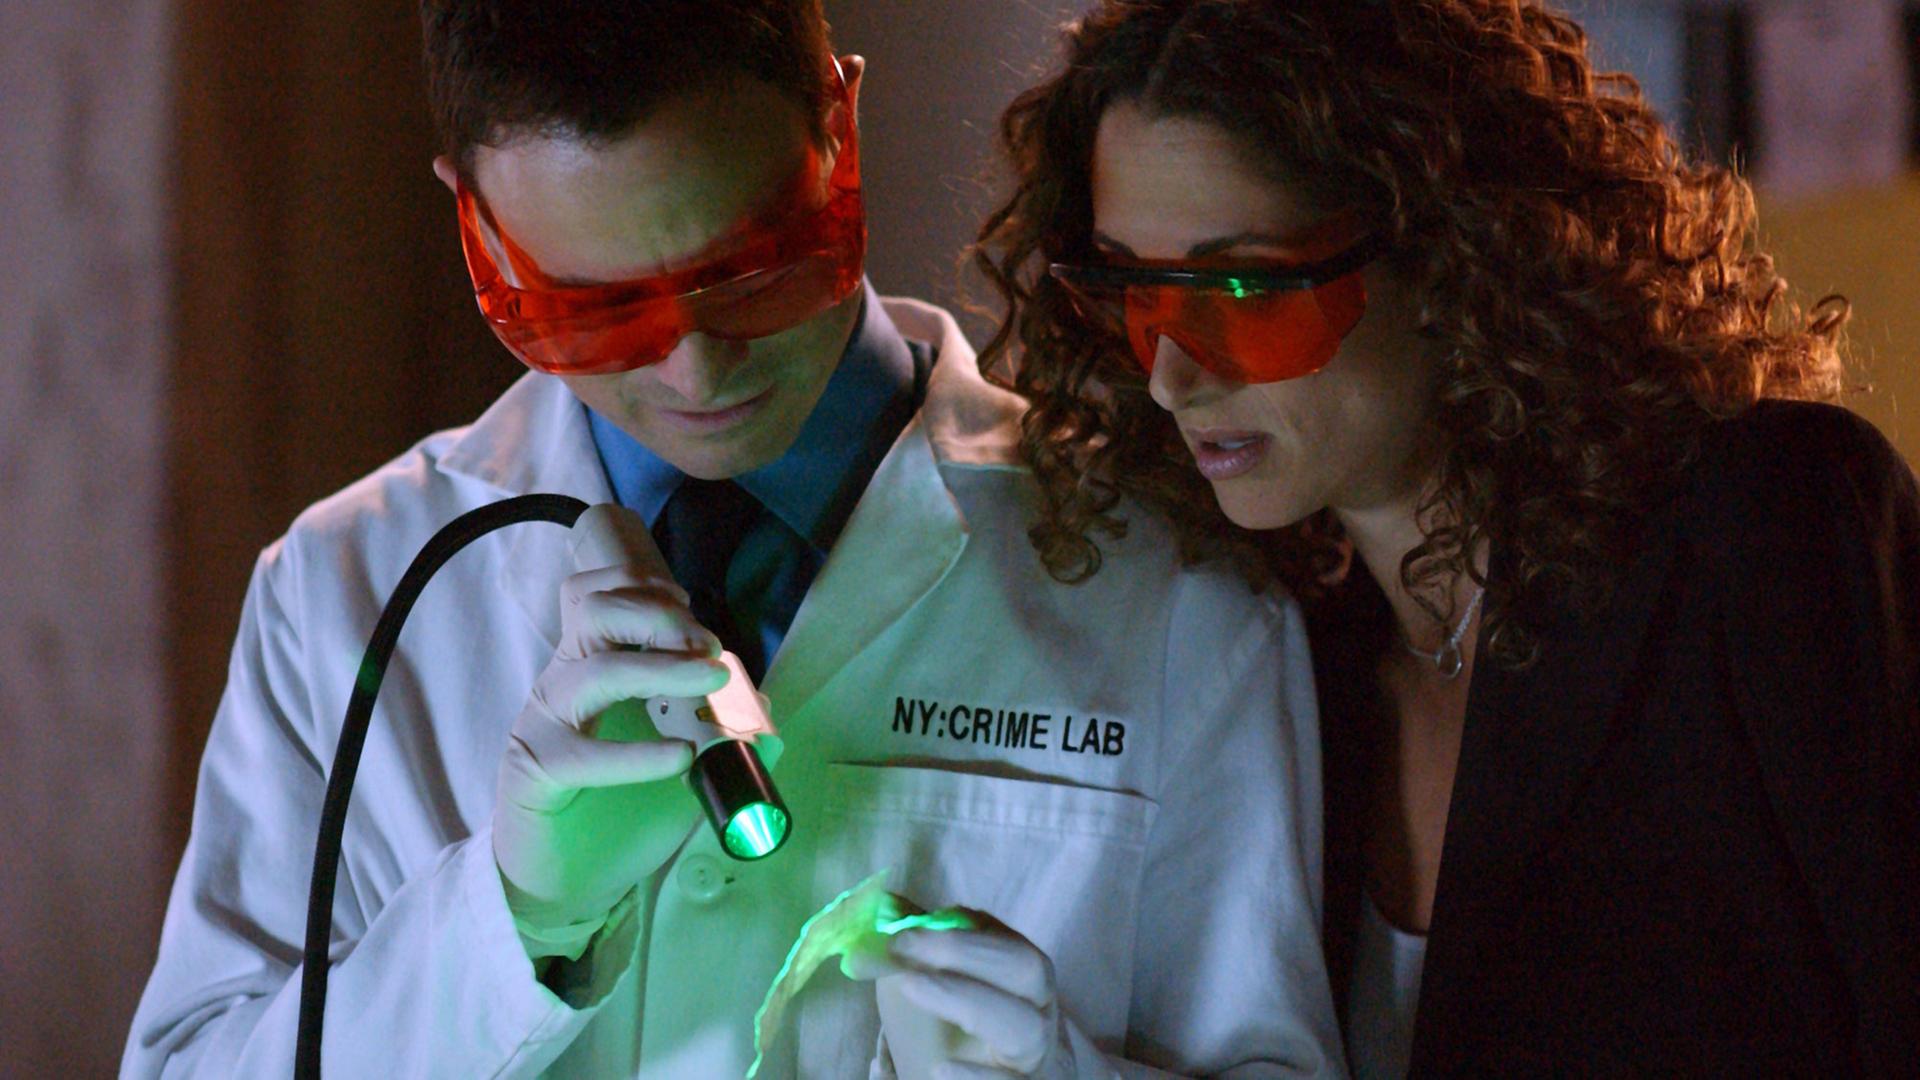 Szenefoto aus "CSI:NY" mit Schauspieler Gary Sinise als Mac Taylor und Melina Kanakaredes als seine Partnerin Stella Bonasera